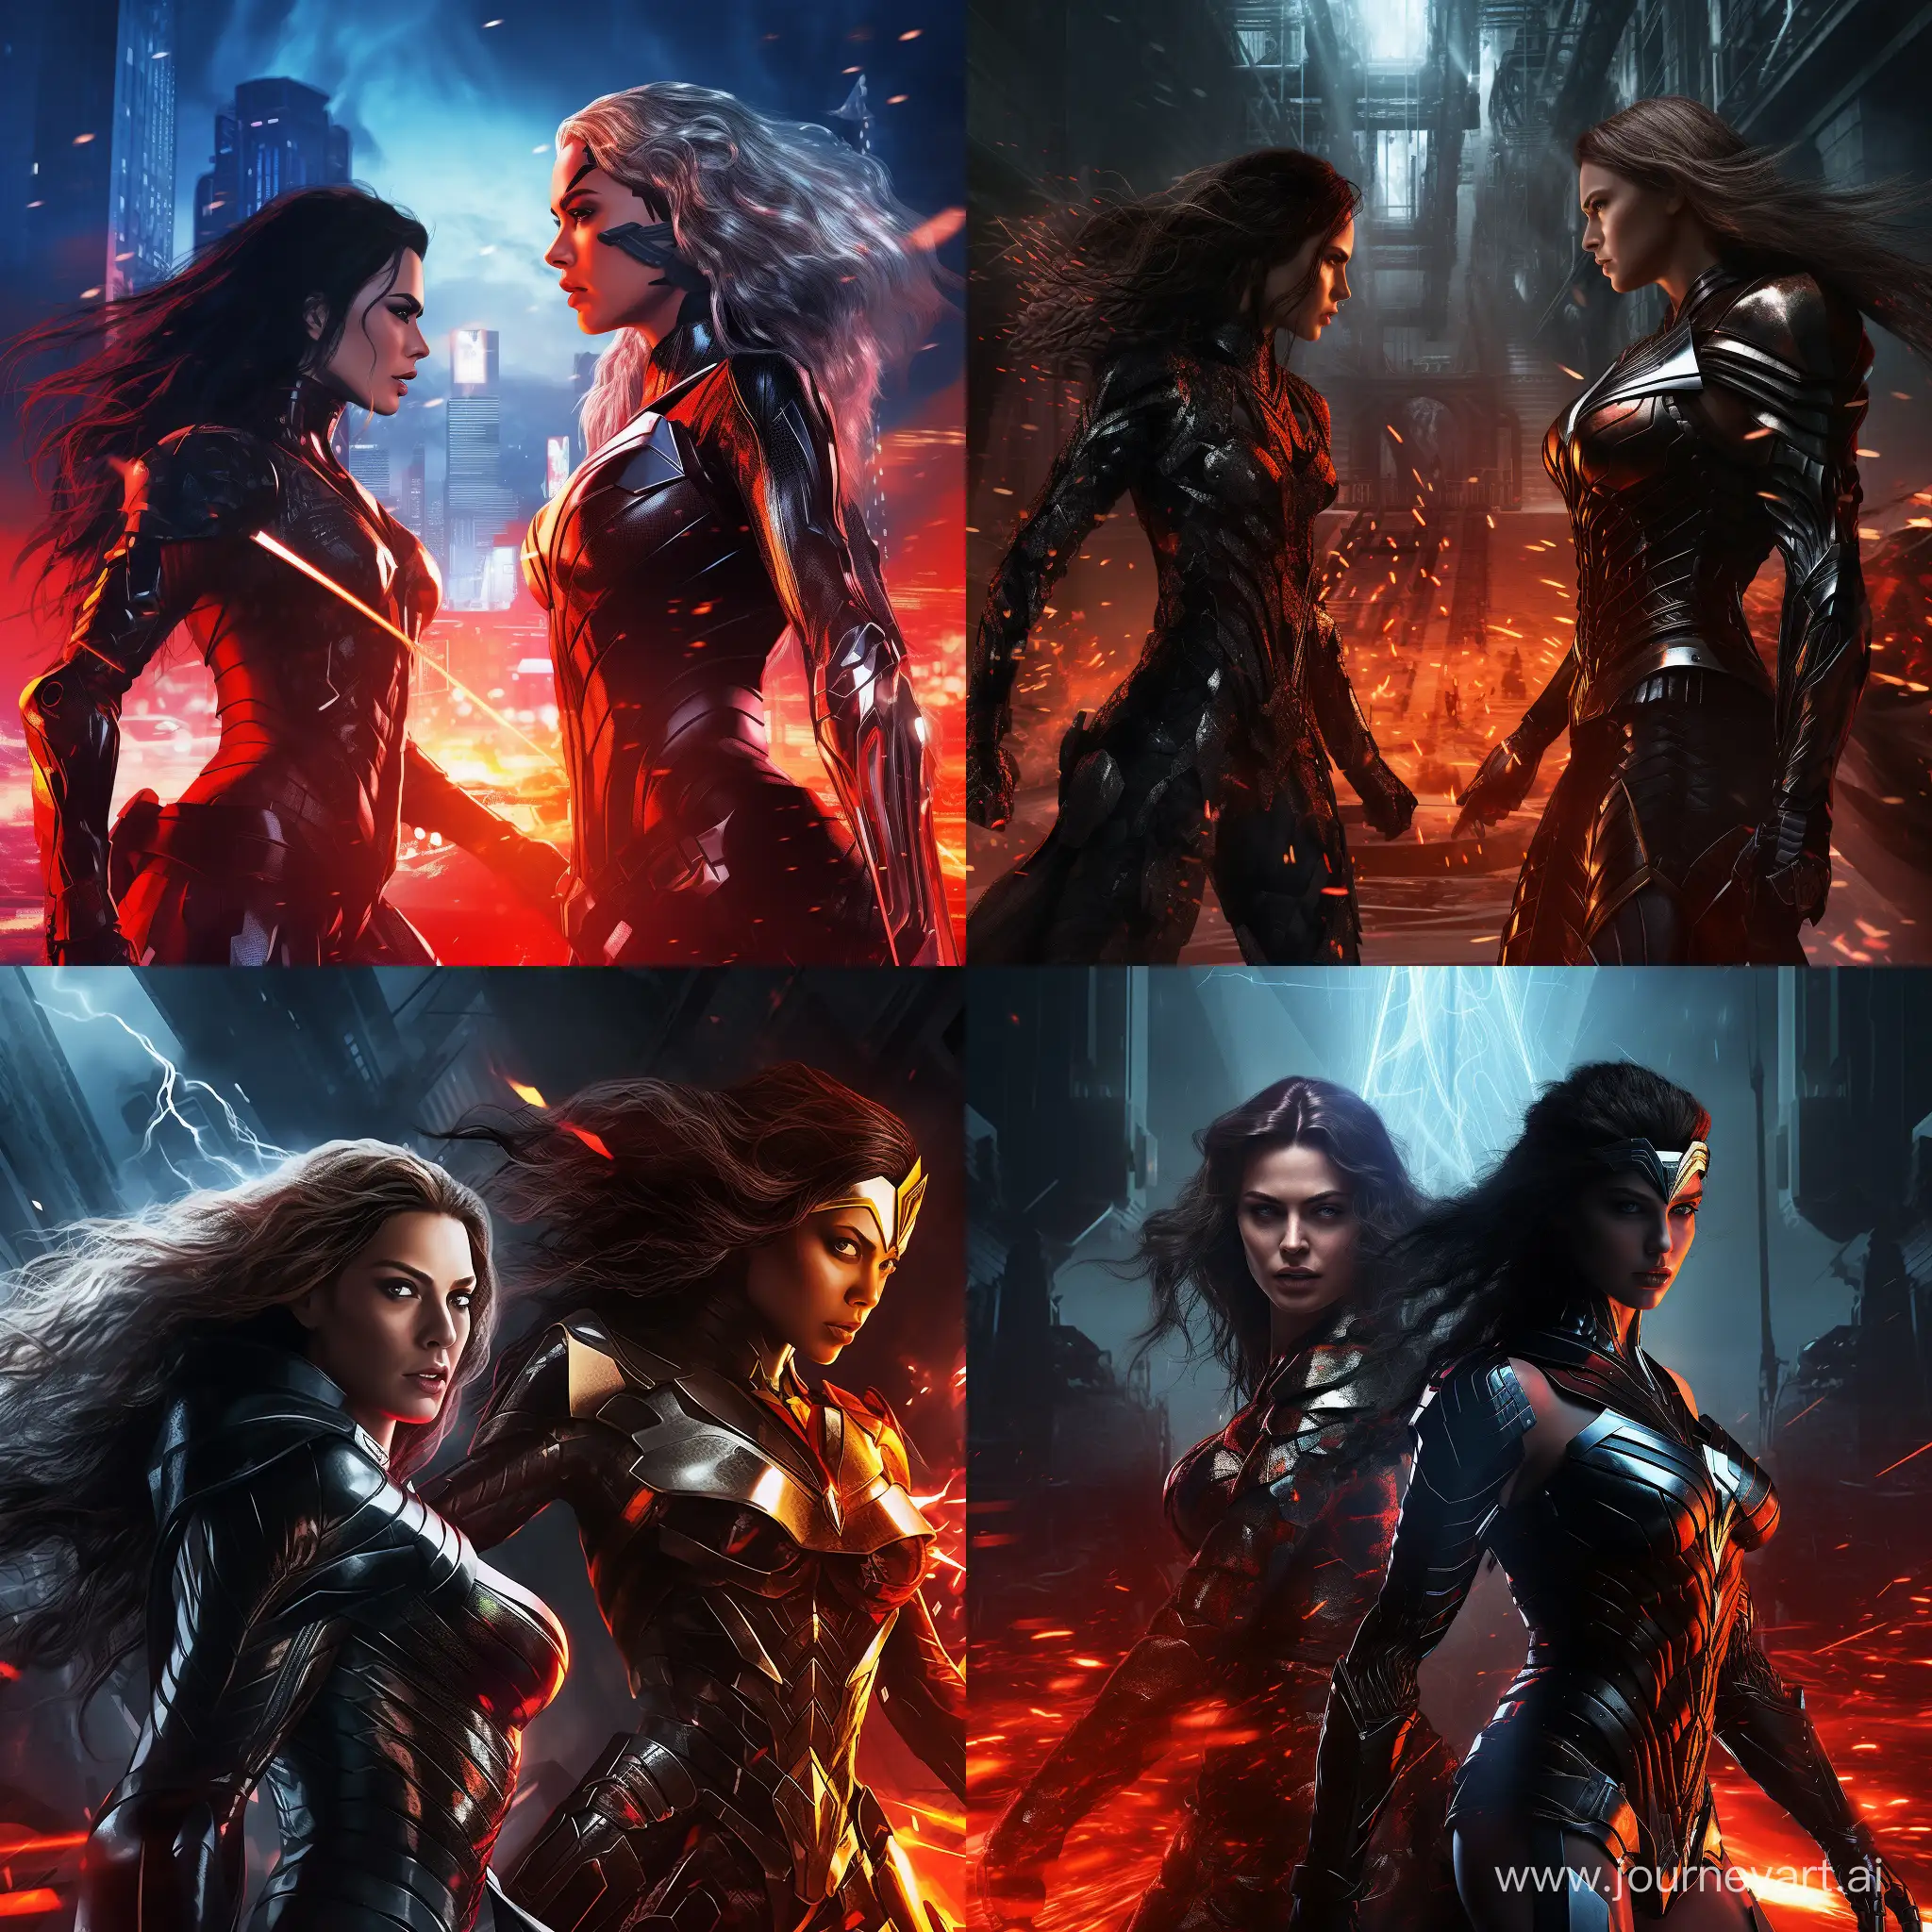 Epic-Battle-Wonder-Woman-vs-Black-Widow-in-Cyberpunk-Showdown